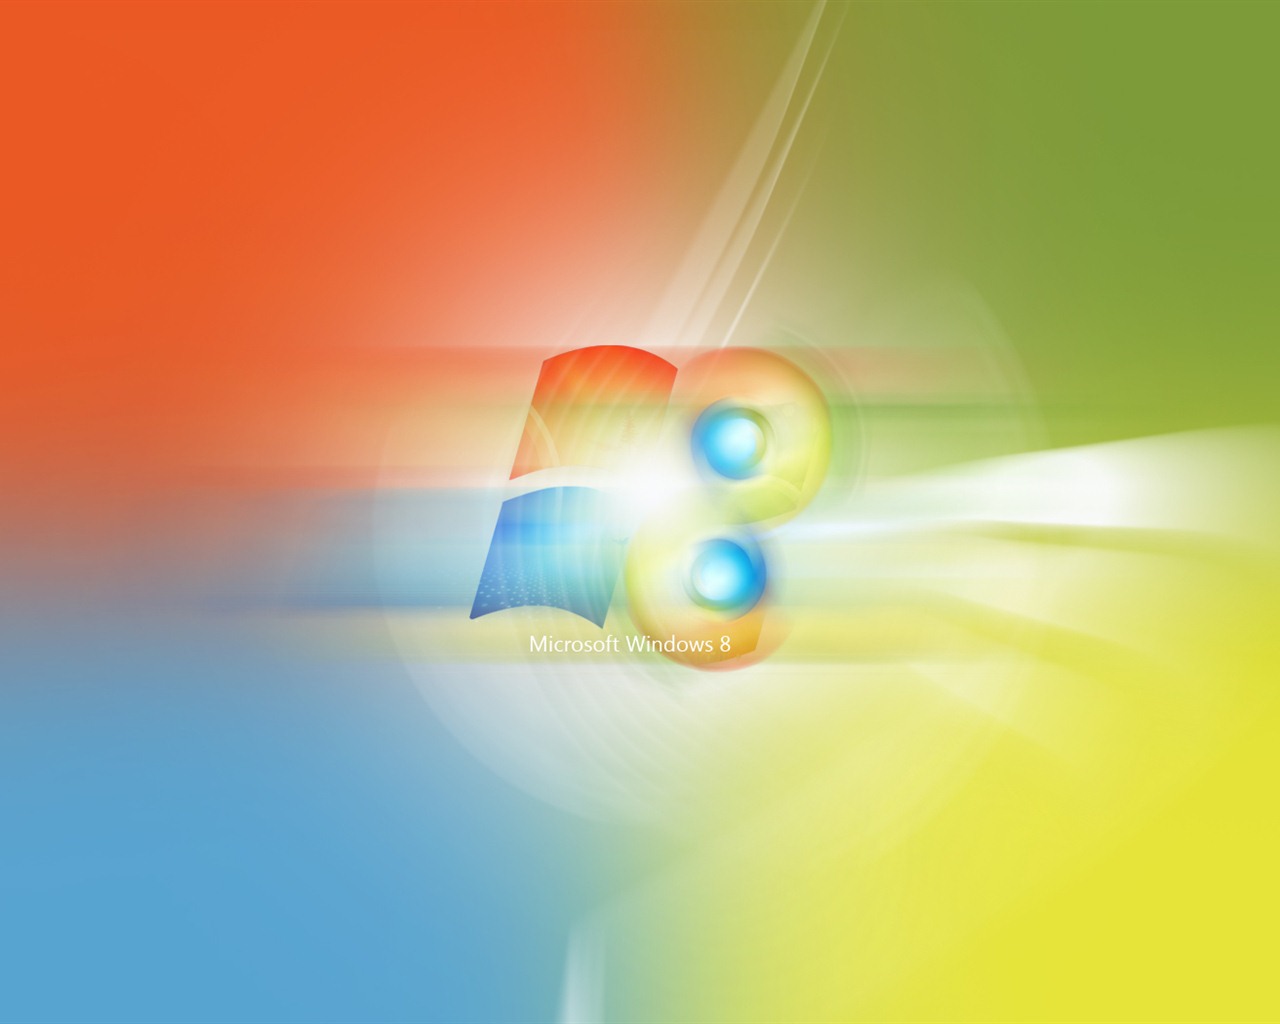 Windows 8 Theme Wallpaper (2) #4 - 1280x1024